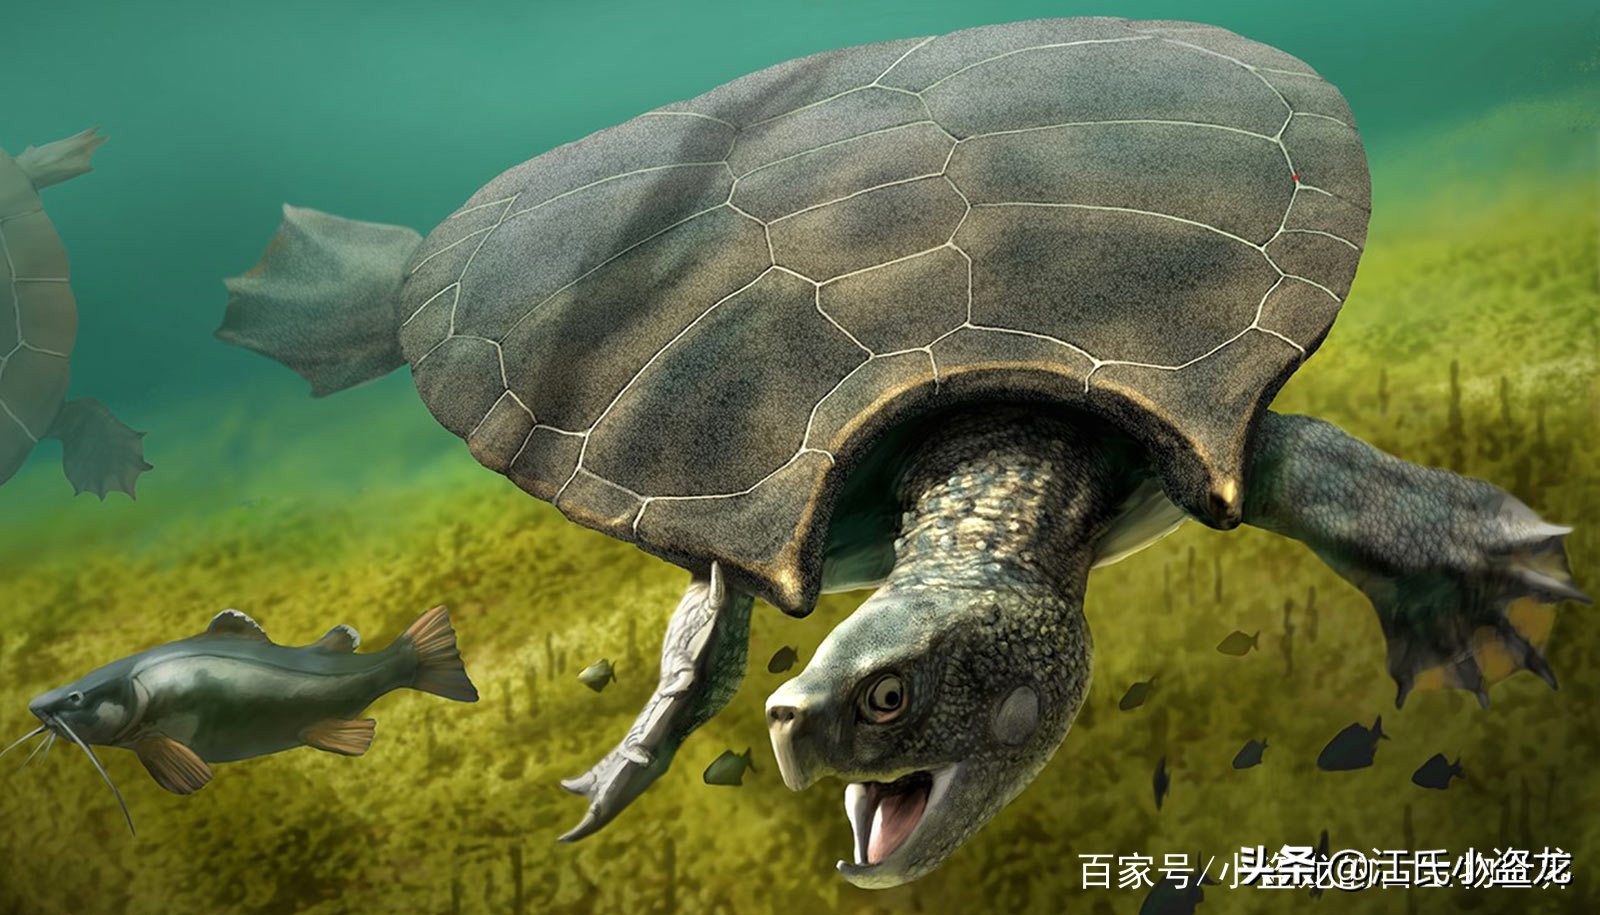 古海龟:背壳能停小汽车的远古巨龟